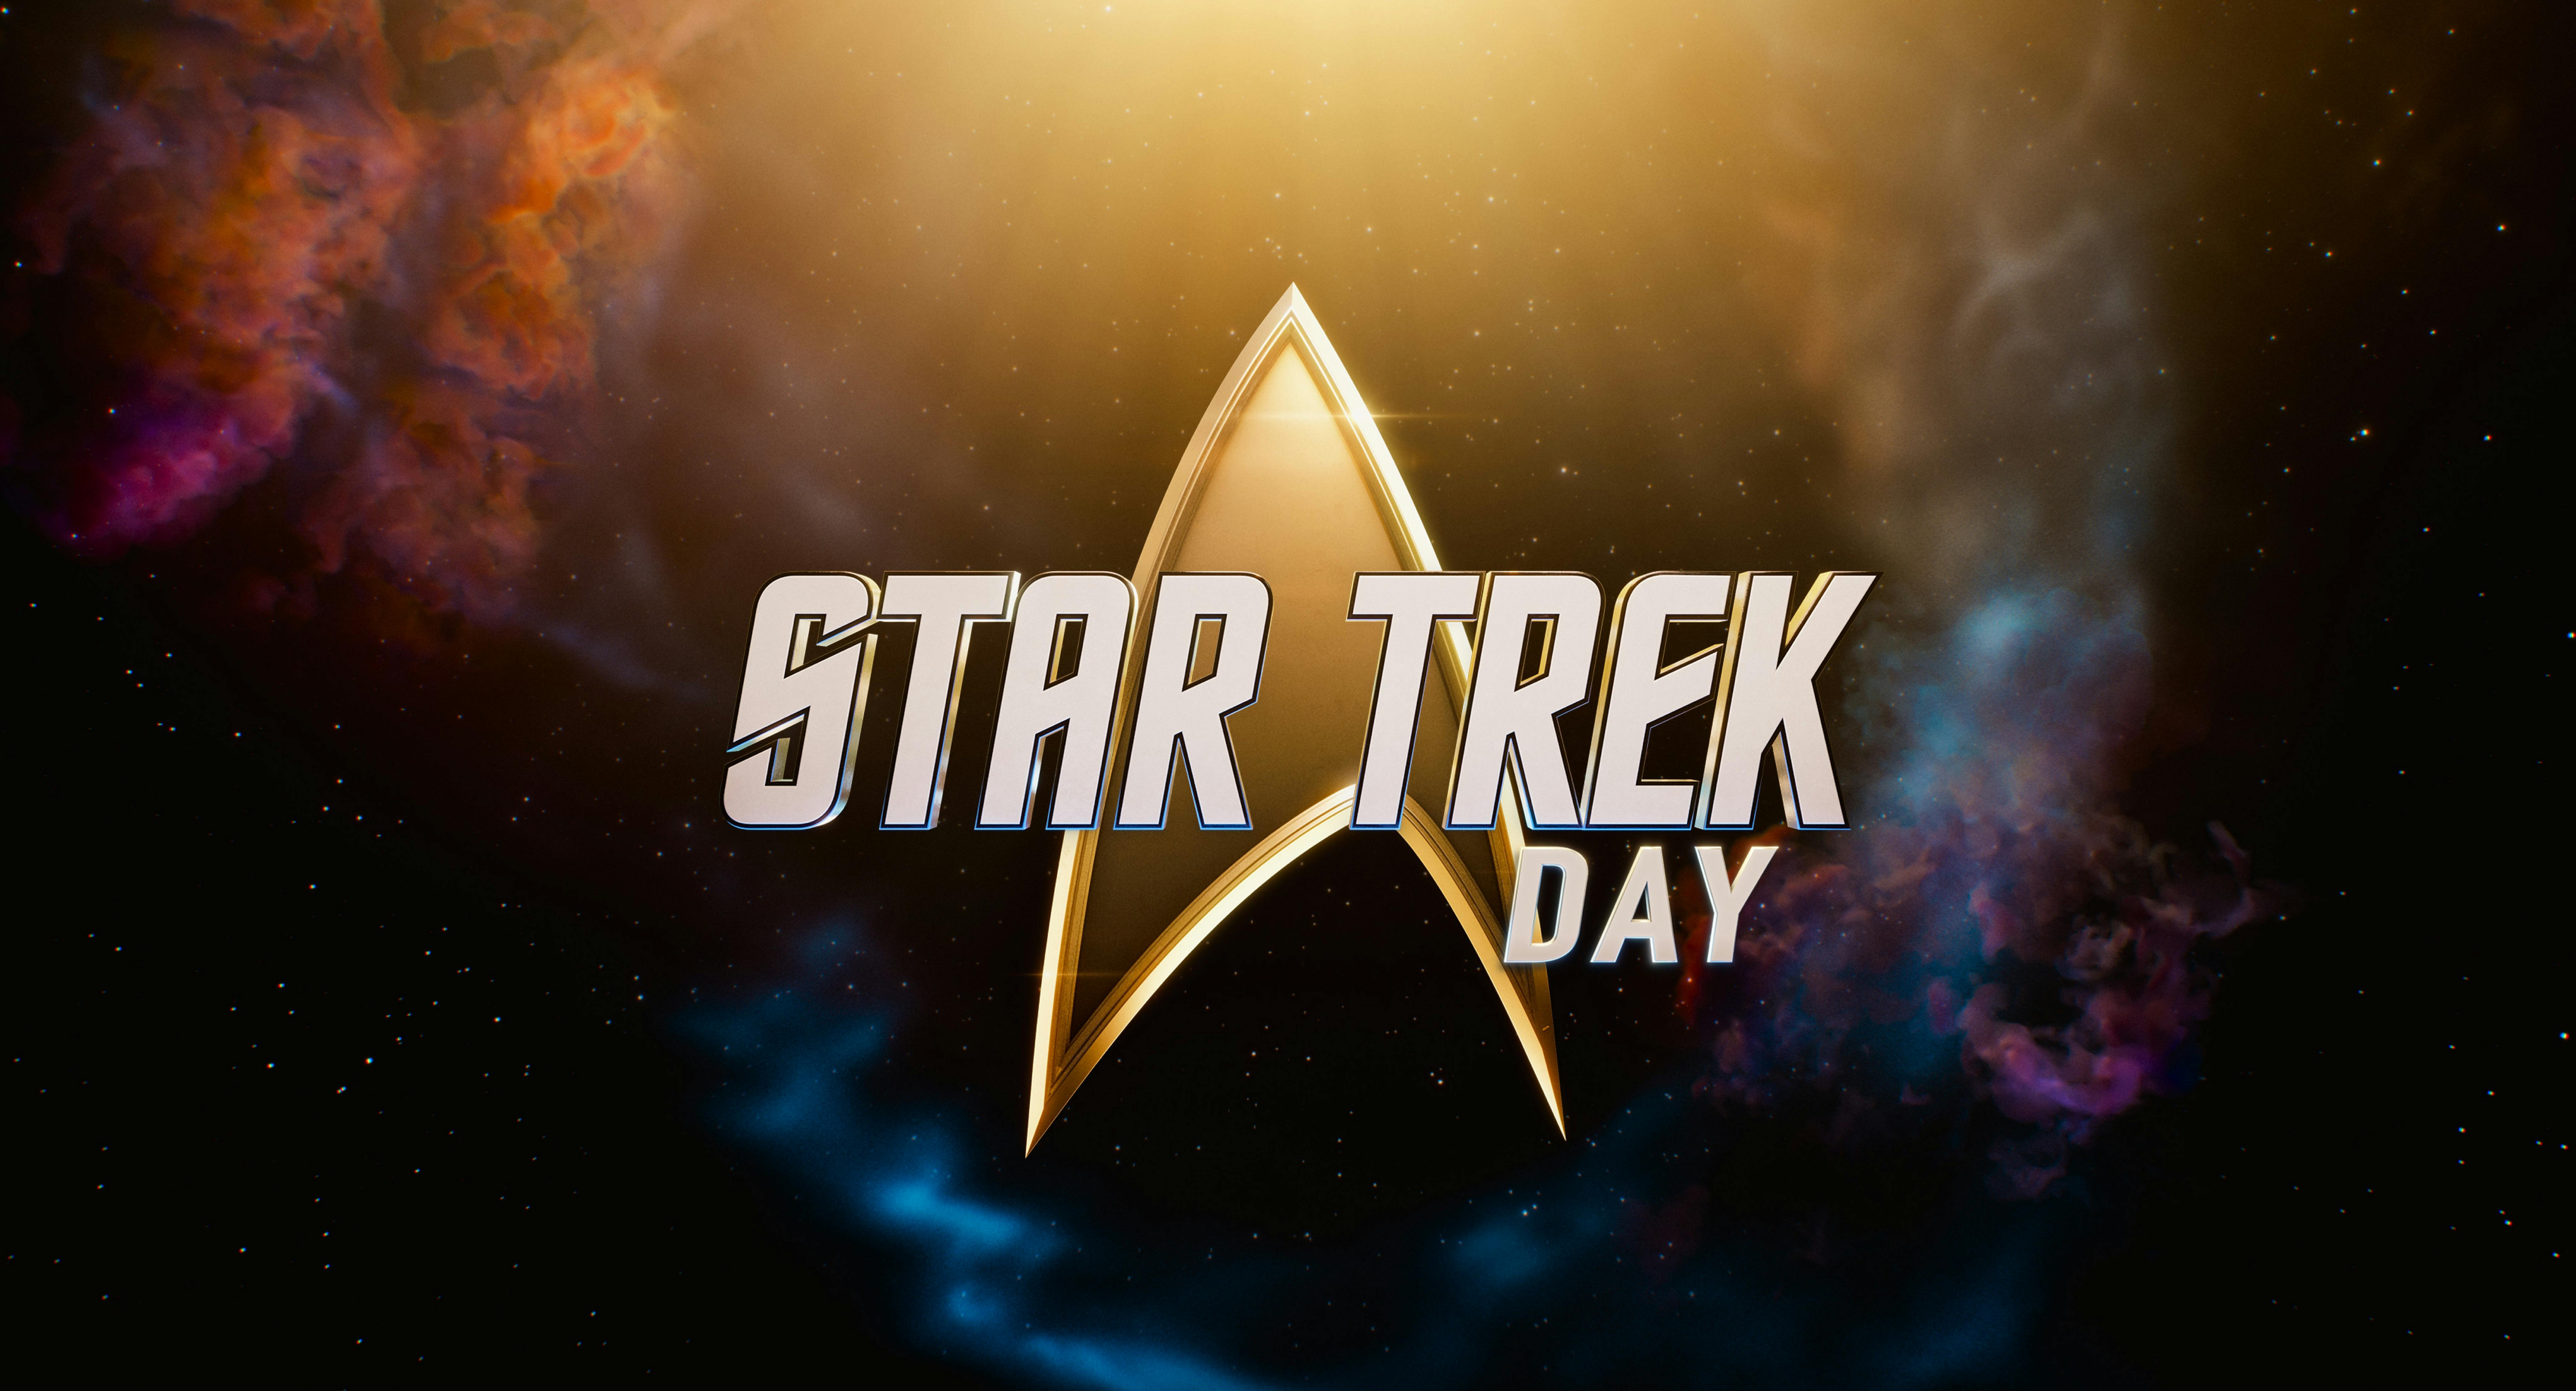 Delta logo for the 'Star Trek Day' global fan event